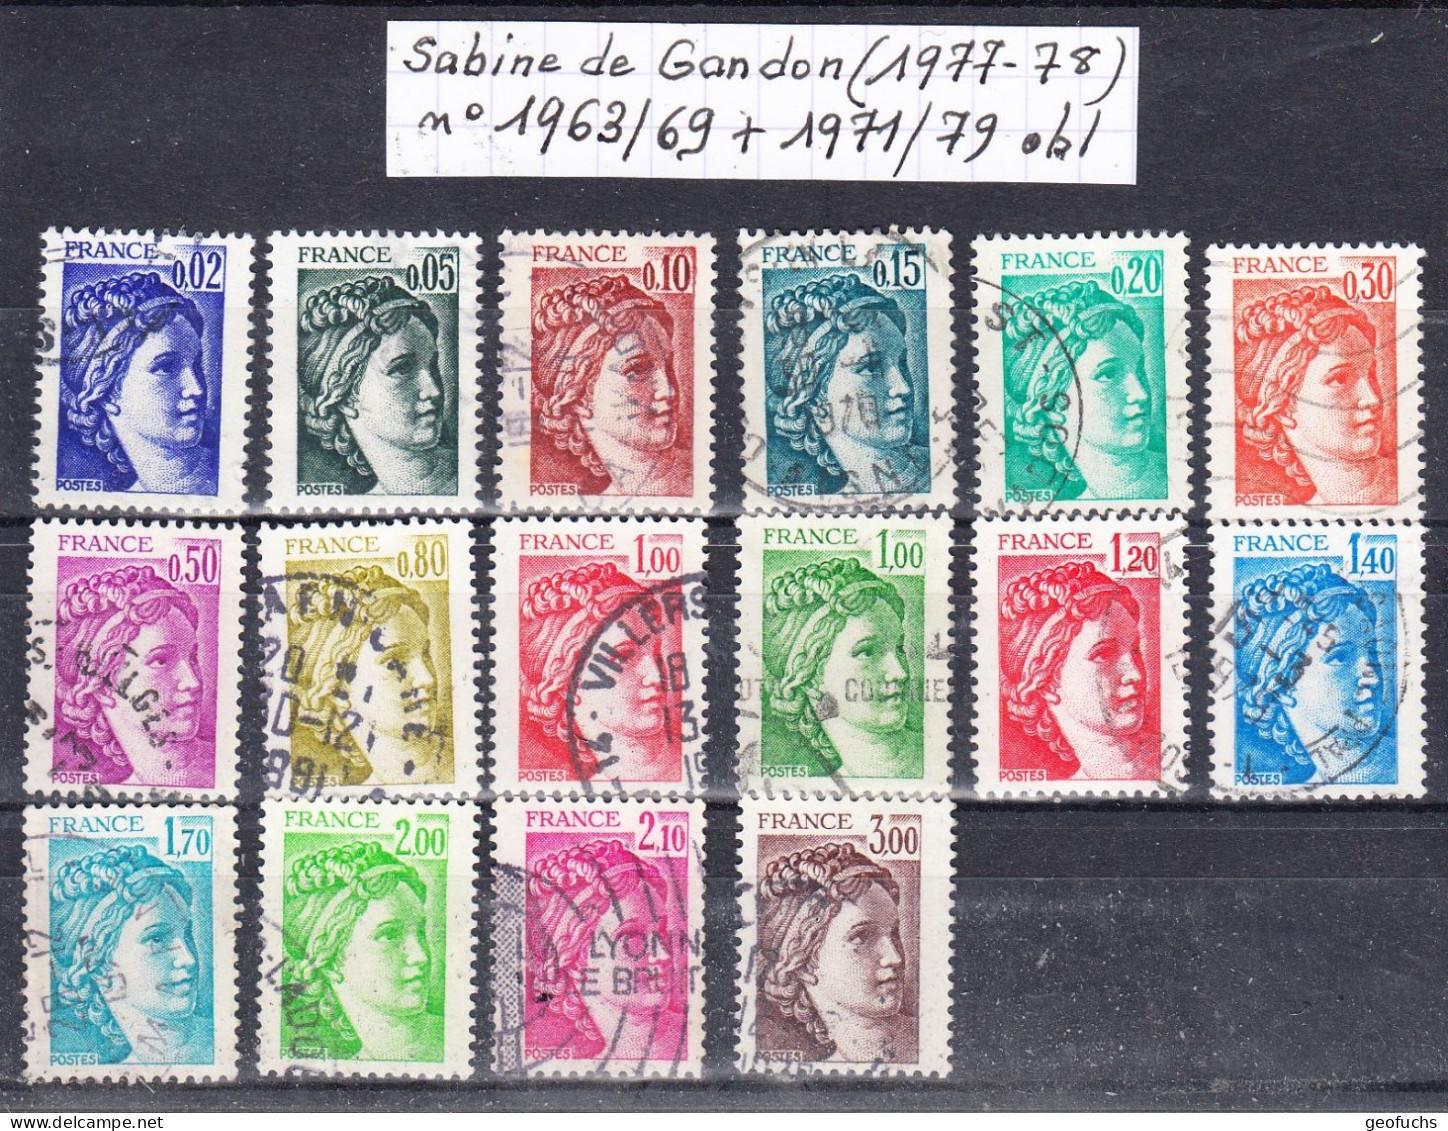 France Sabine De Gandon (1977-78) Y/T N°1963/69 + 1971/79 Oblitérés - 1977-1981 Sabine (Gandon)